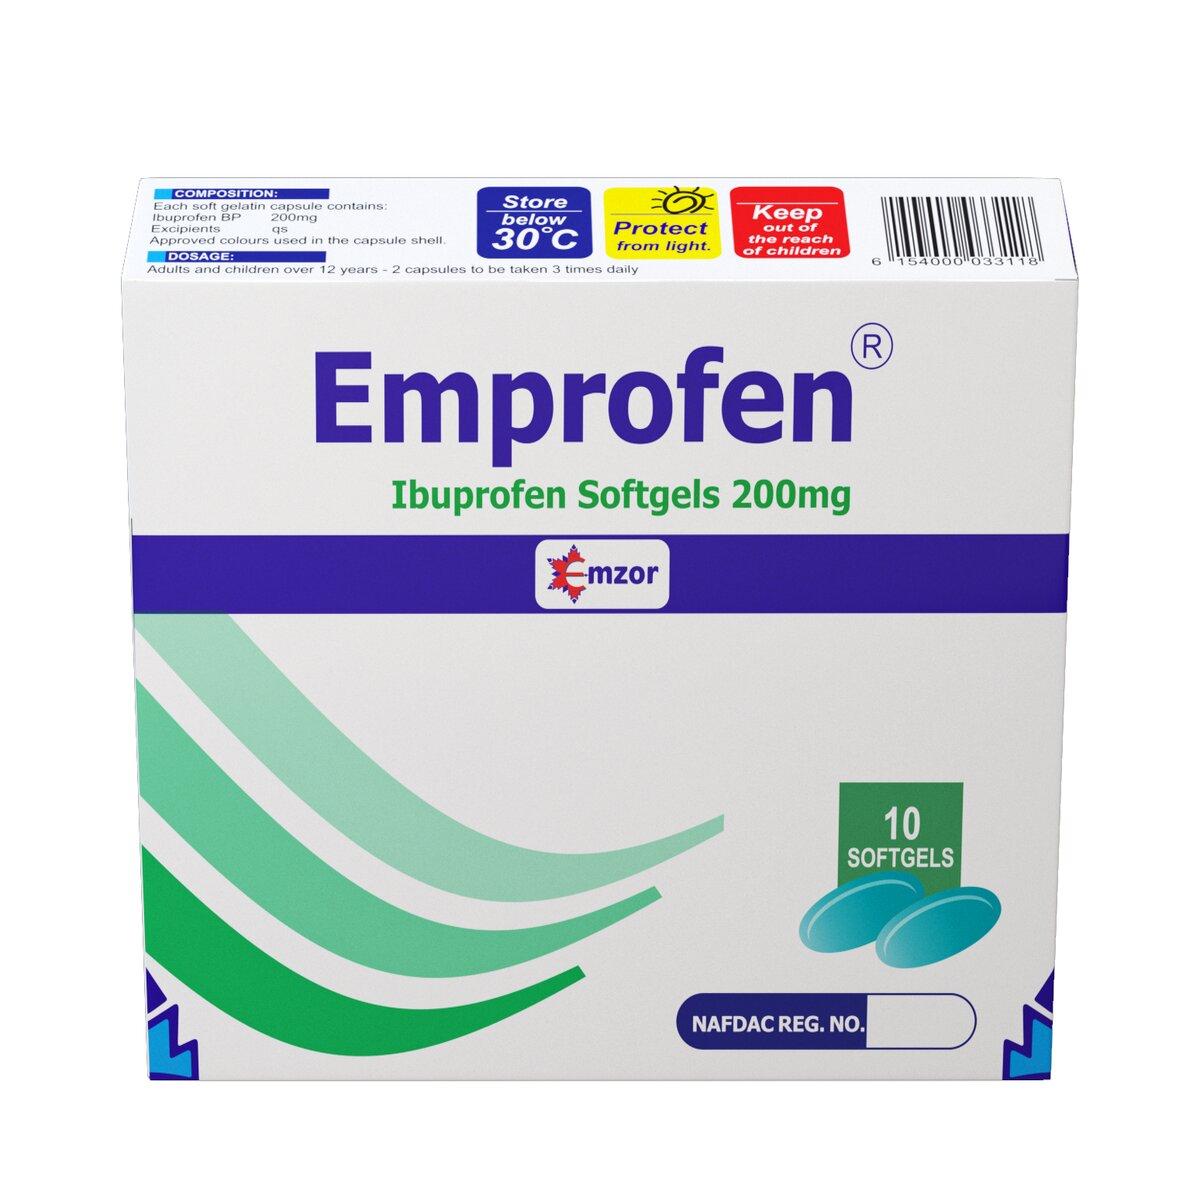 Emprofen (Ibuprofen) 200mg Softgels